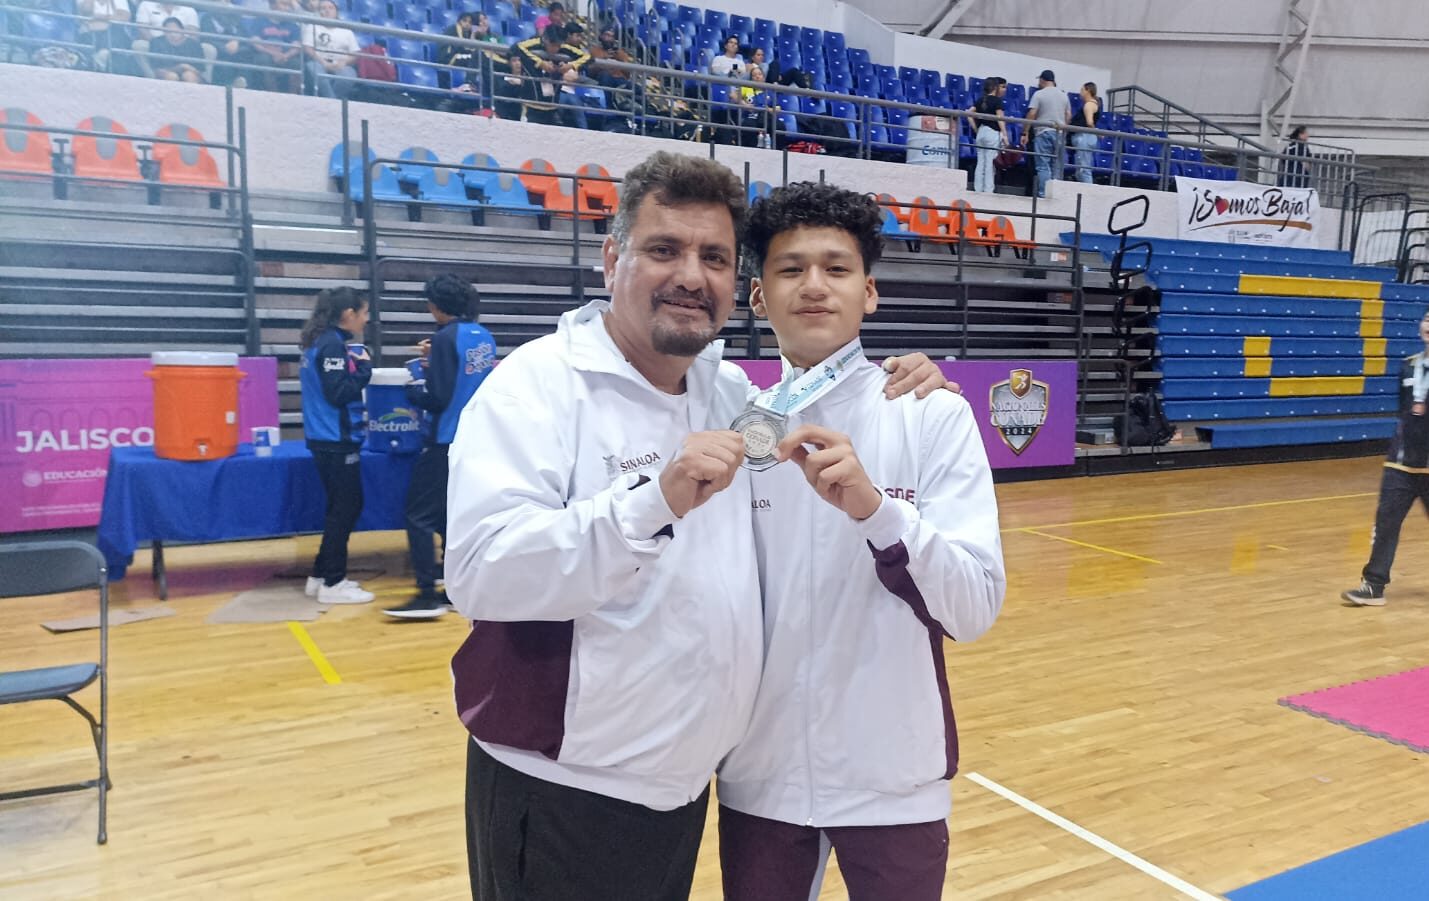 El karateca mazatleco entregó alma y cuerpo en el tatami, pero no pudo superar a Iván Corona, en la final de la categoria Junior -61 kilogramos, celebrada en eñ Domo Code Alcalde de Guadalajara, Jalisco